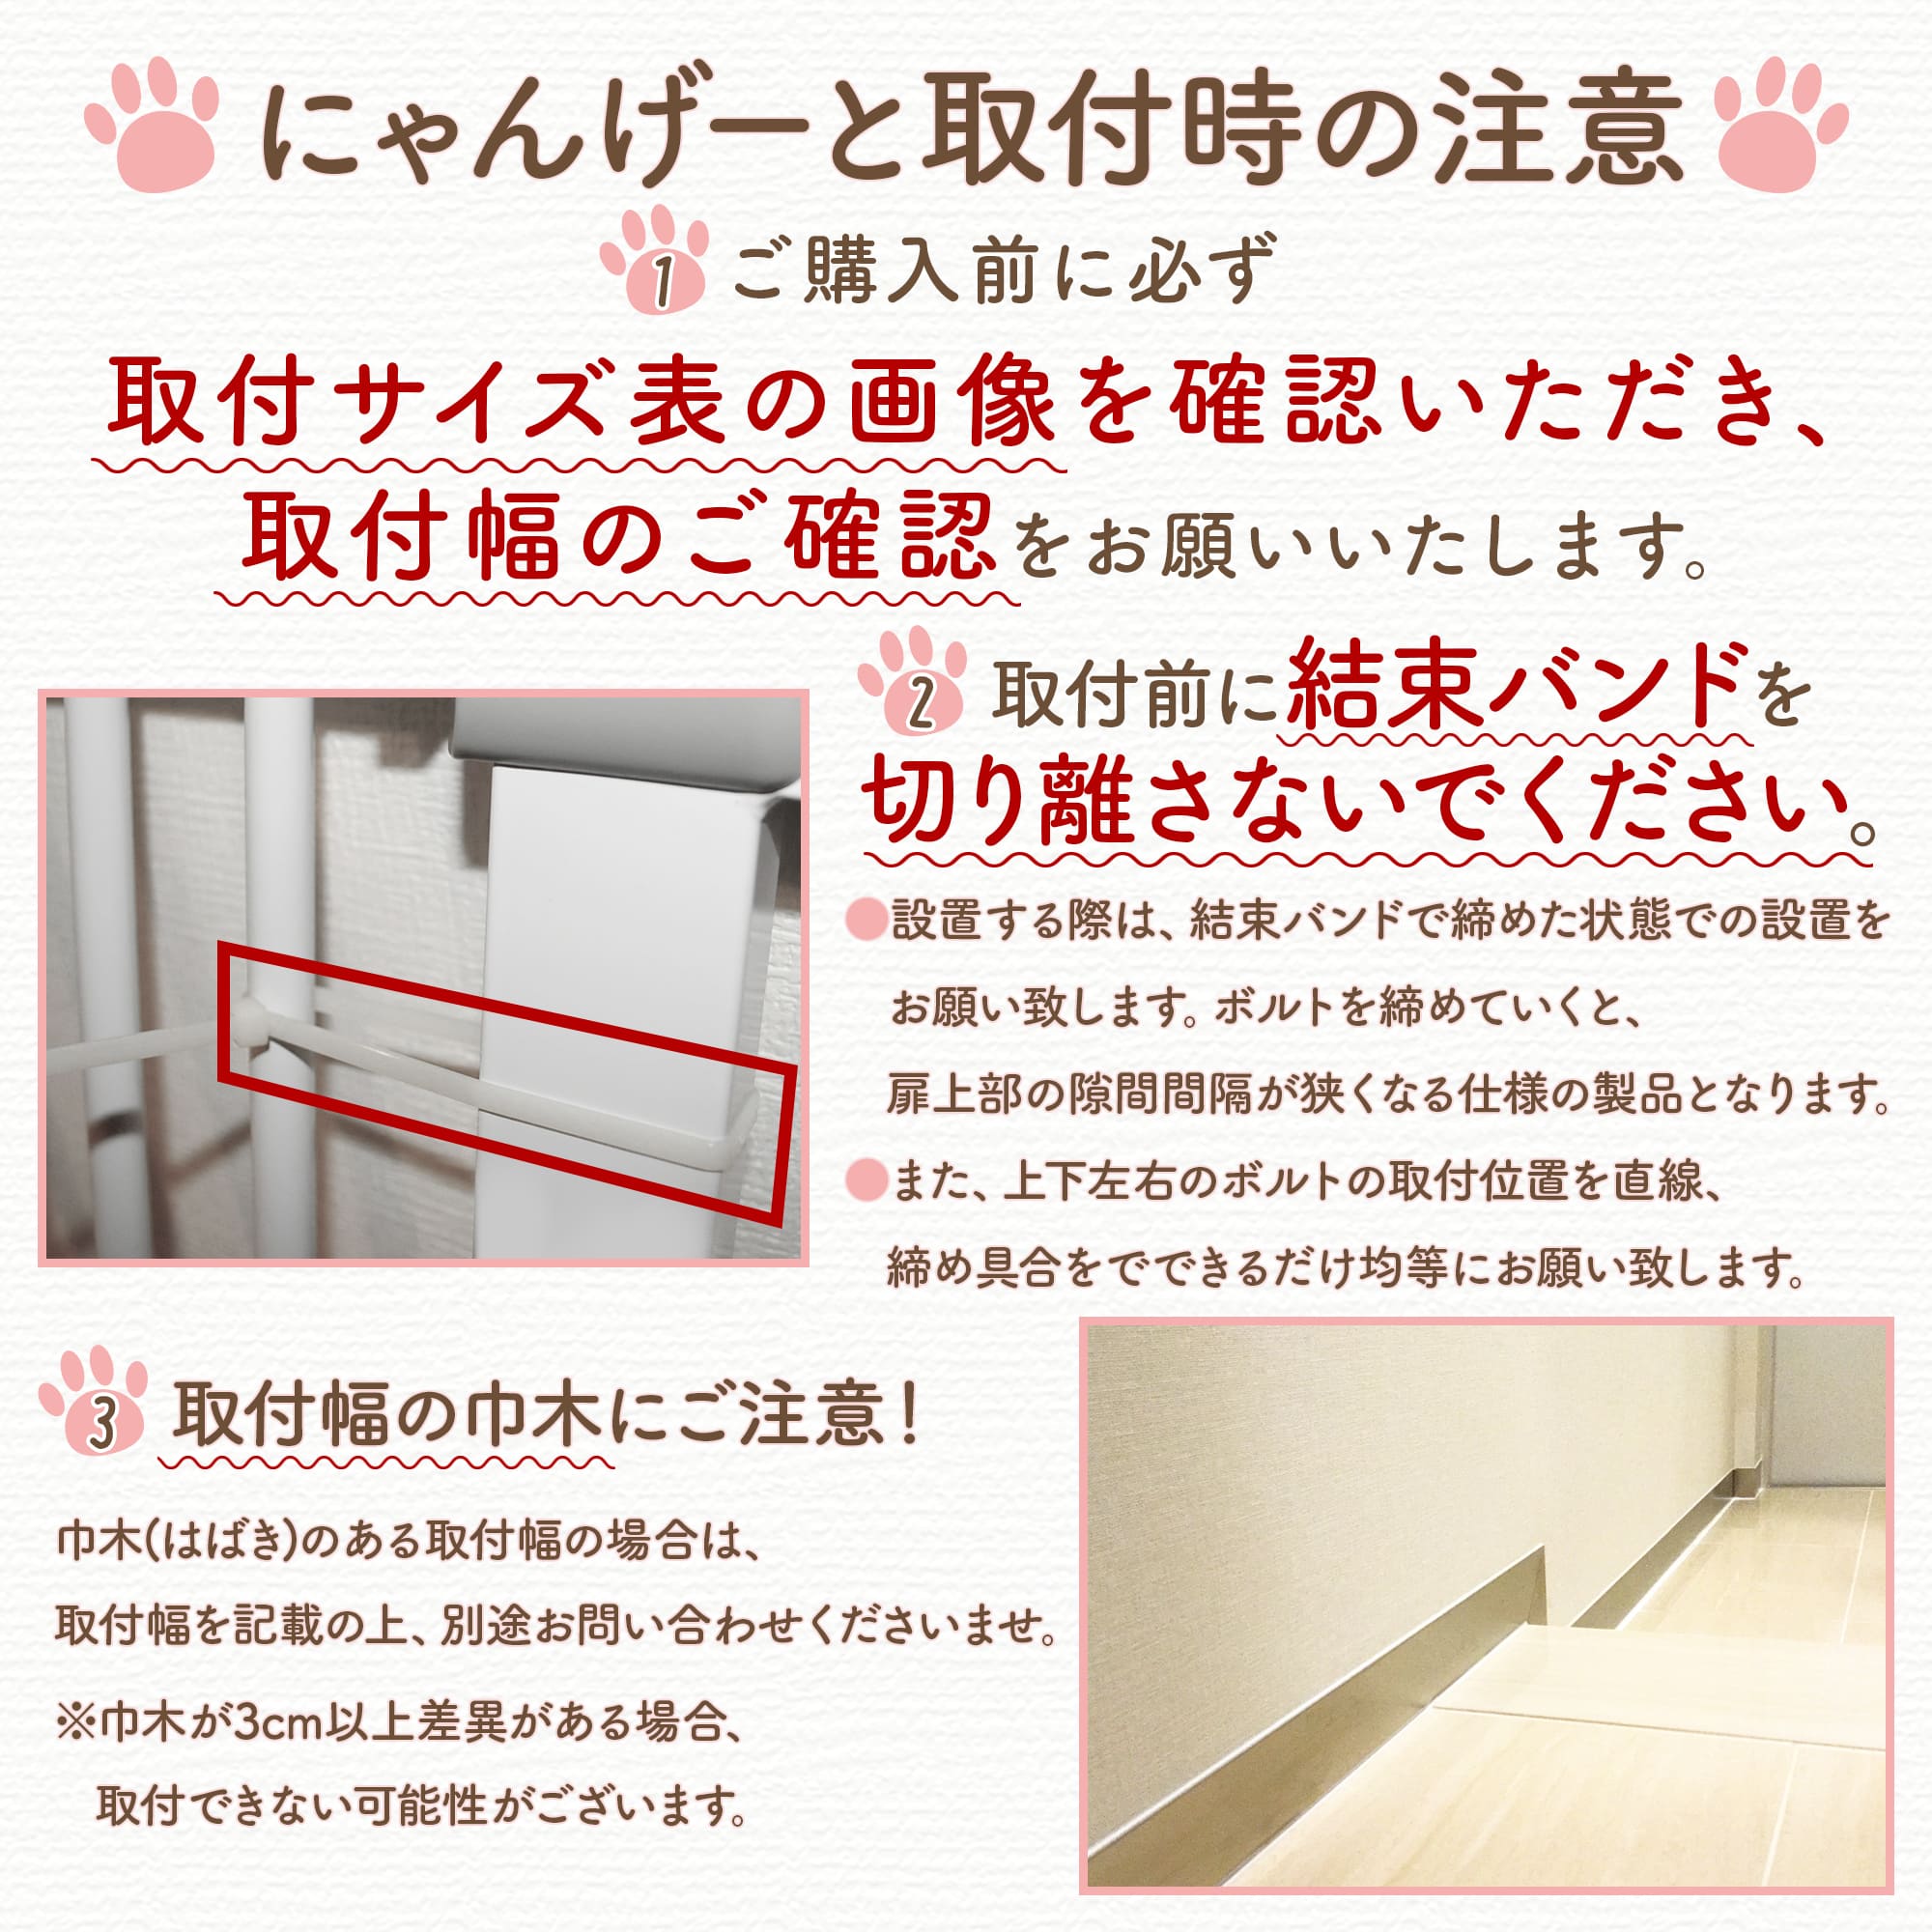 LIFAXIA pet gate cat 150cm island sack shop [ door attaching pet gate enhancing or.. parts ] white black 10.5cm 21cm..